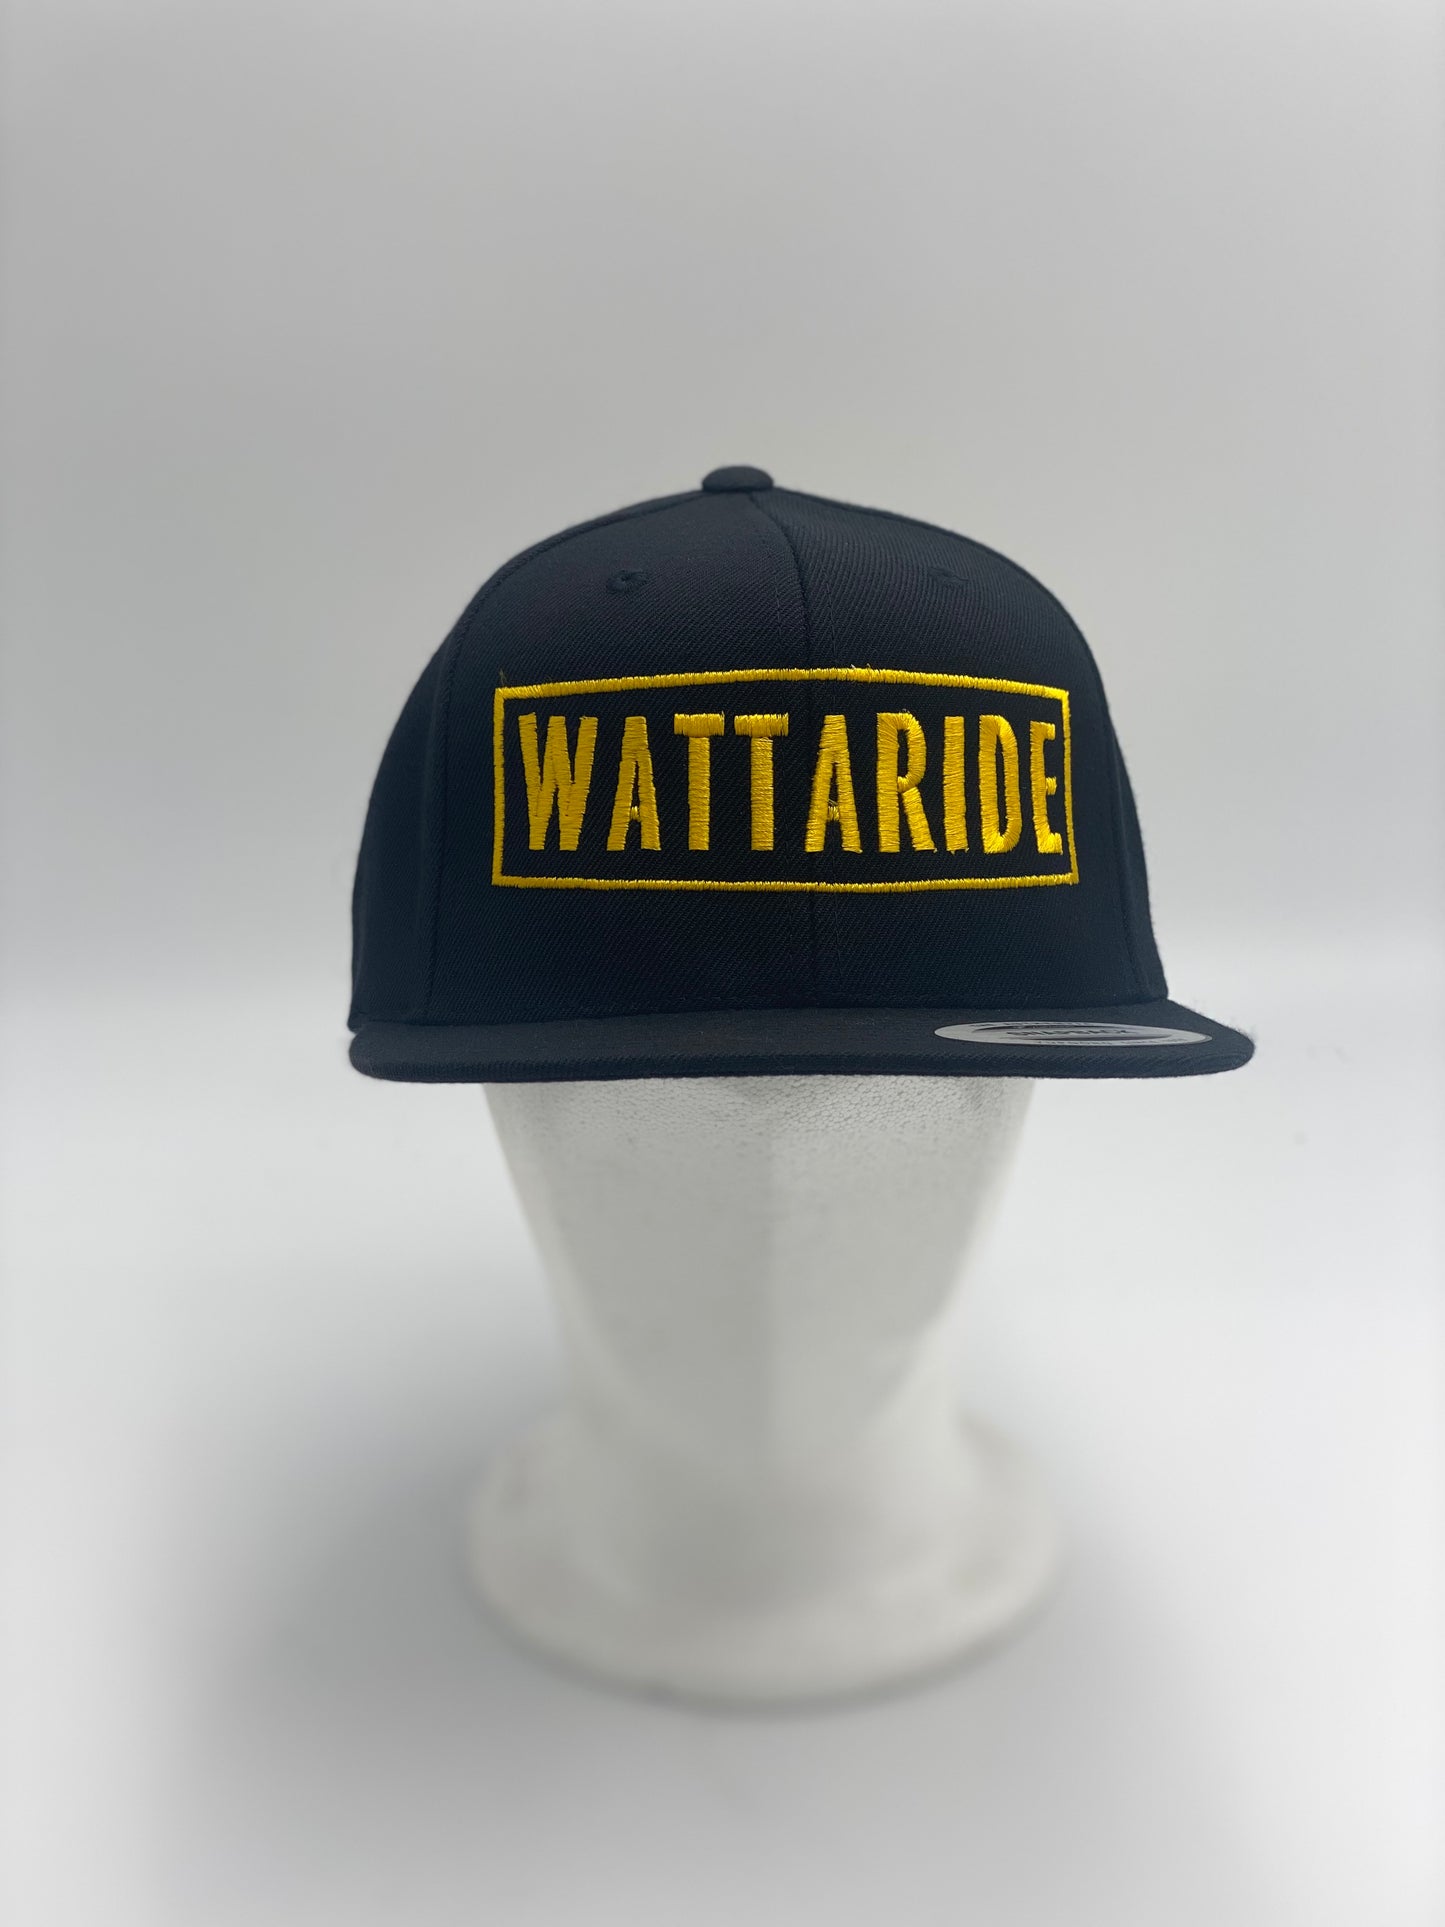 Watt-a-cap